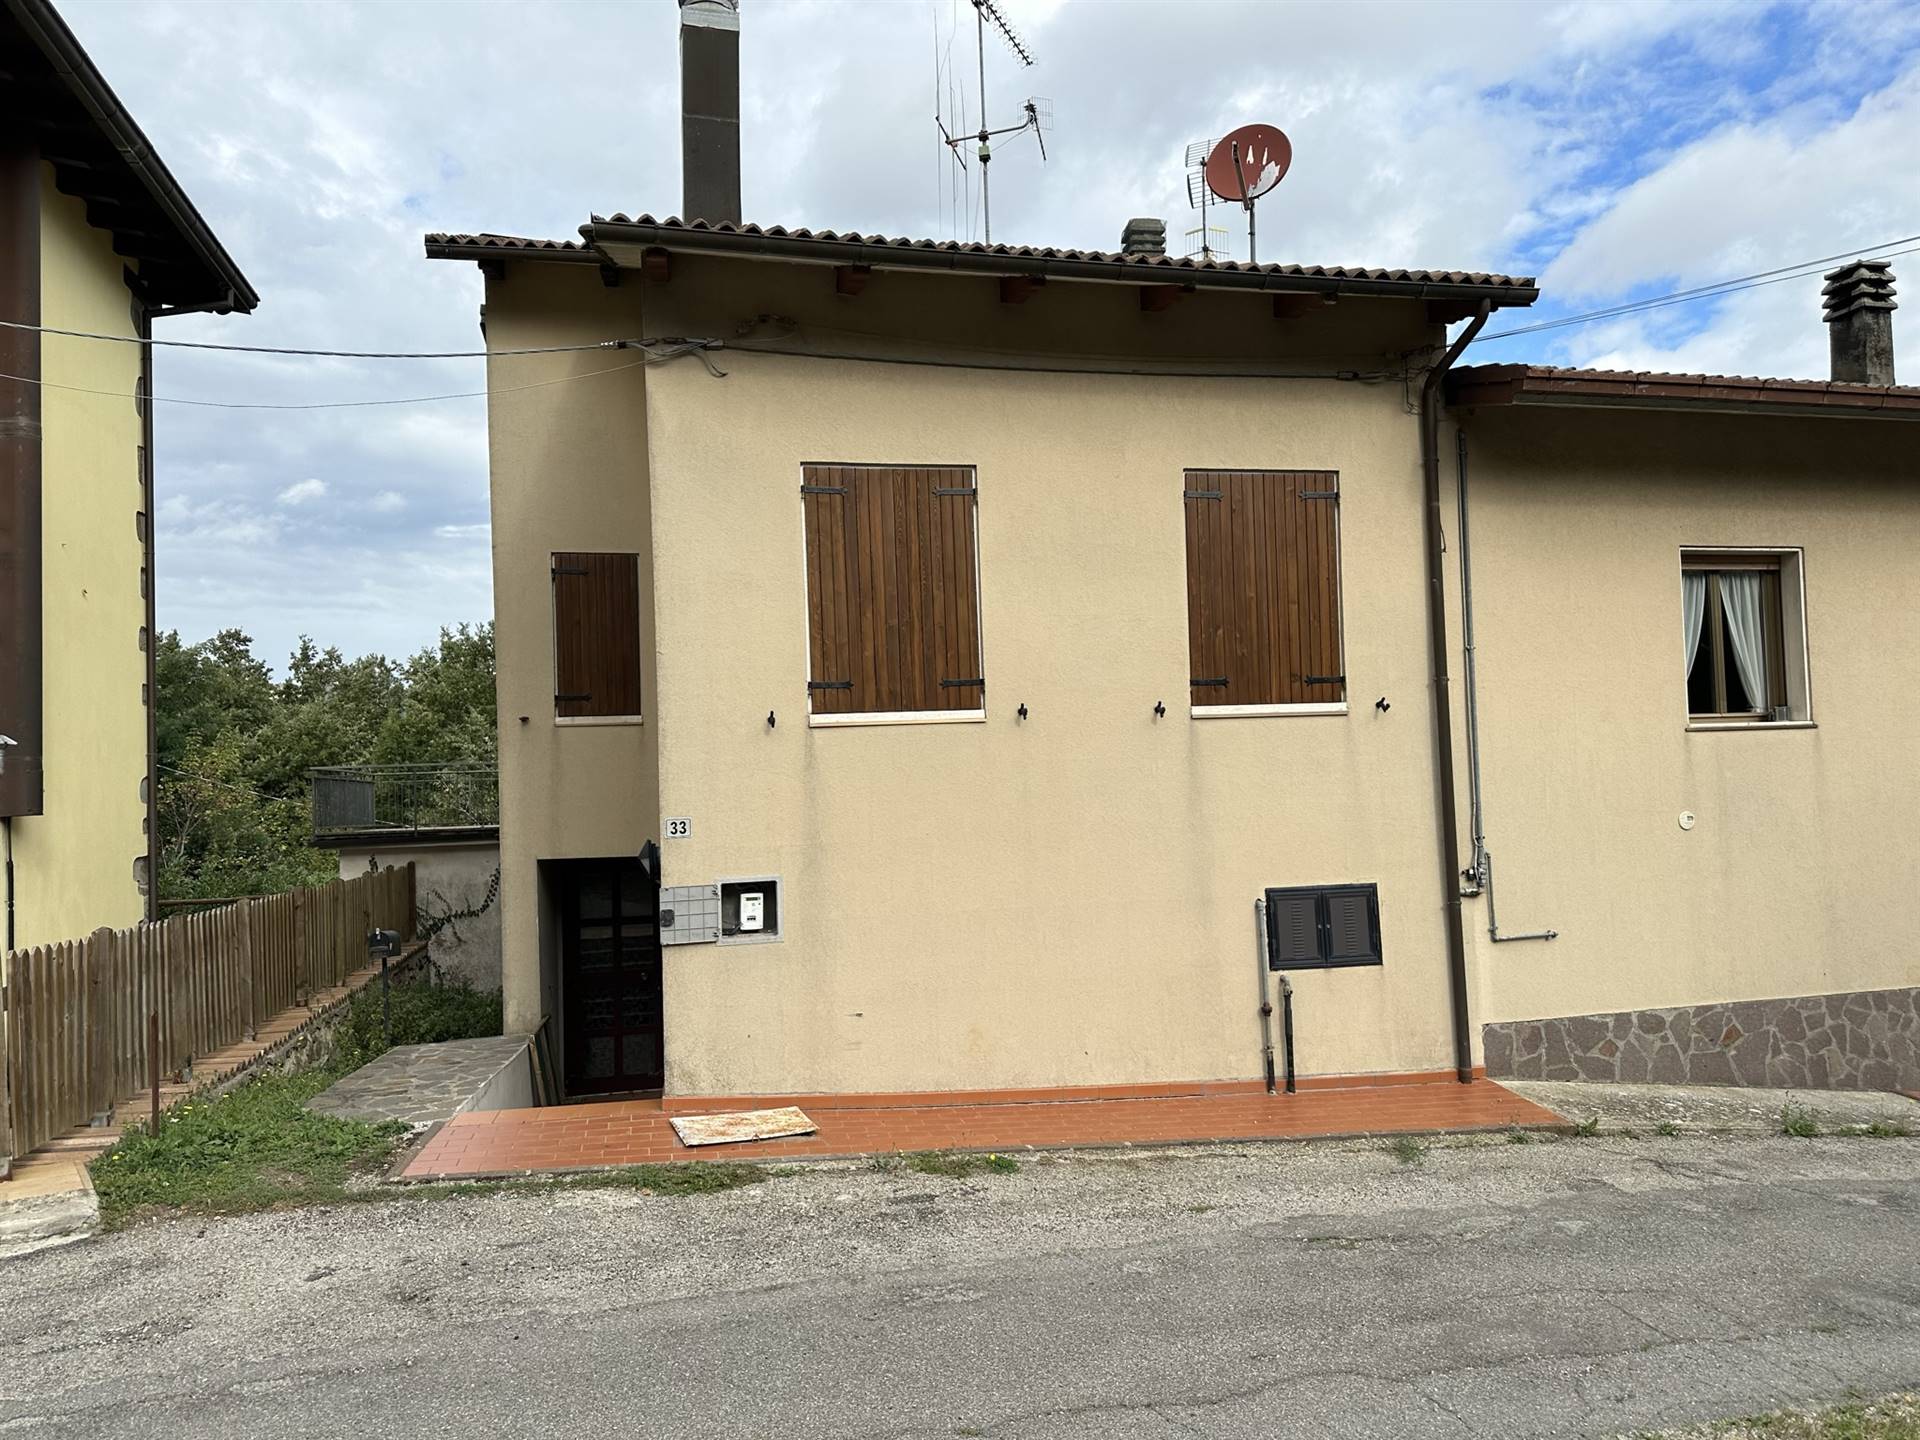 Soluzione Indipendente in vendita a Castiglione dei Pepoli, 6 locali, prezzo € 120.000 | PortaleAgenzieImmobiliari.it